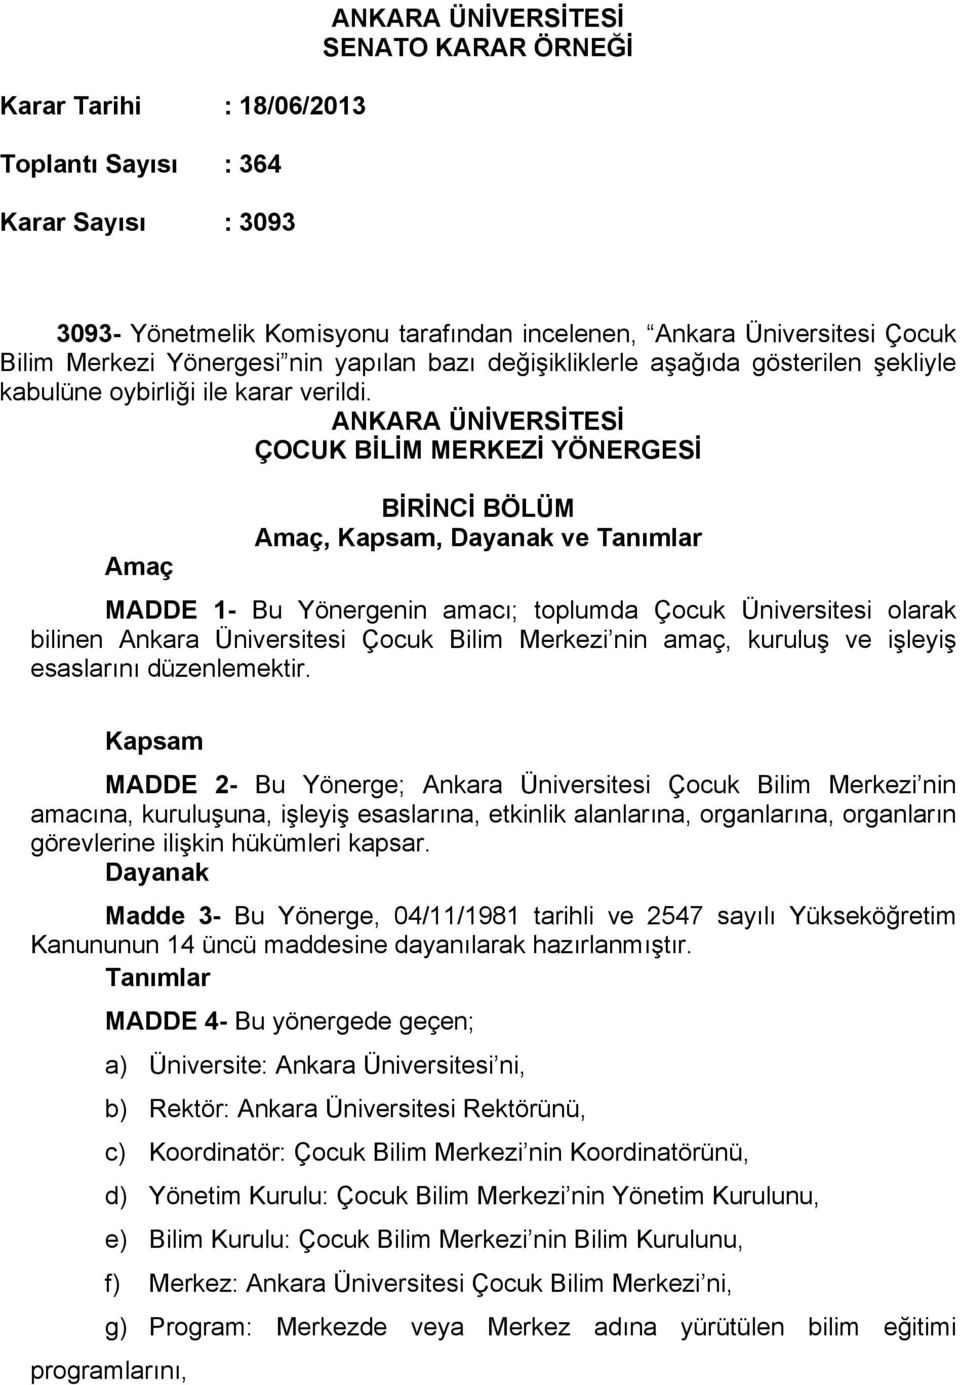 ANKARA ÜNİVERSİTESİ ÇOCUK BİLİM MERKEZİ YÖNERGESİ Amaç BİRİNCİ BÖLÜM Amaç, Kapsam, Dayanak ve Tanımlar MADDE 1- Bu Yönergenin amacı; toplumda Çocuk Üniversitesi olarak bilinen Ankara Üniversitesi